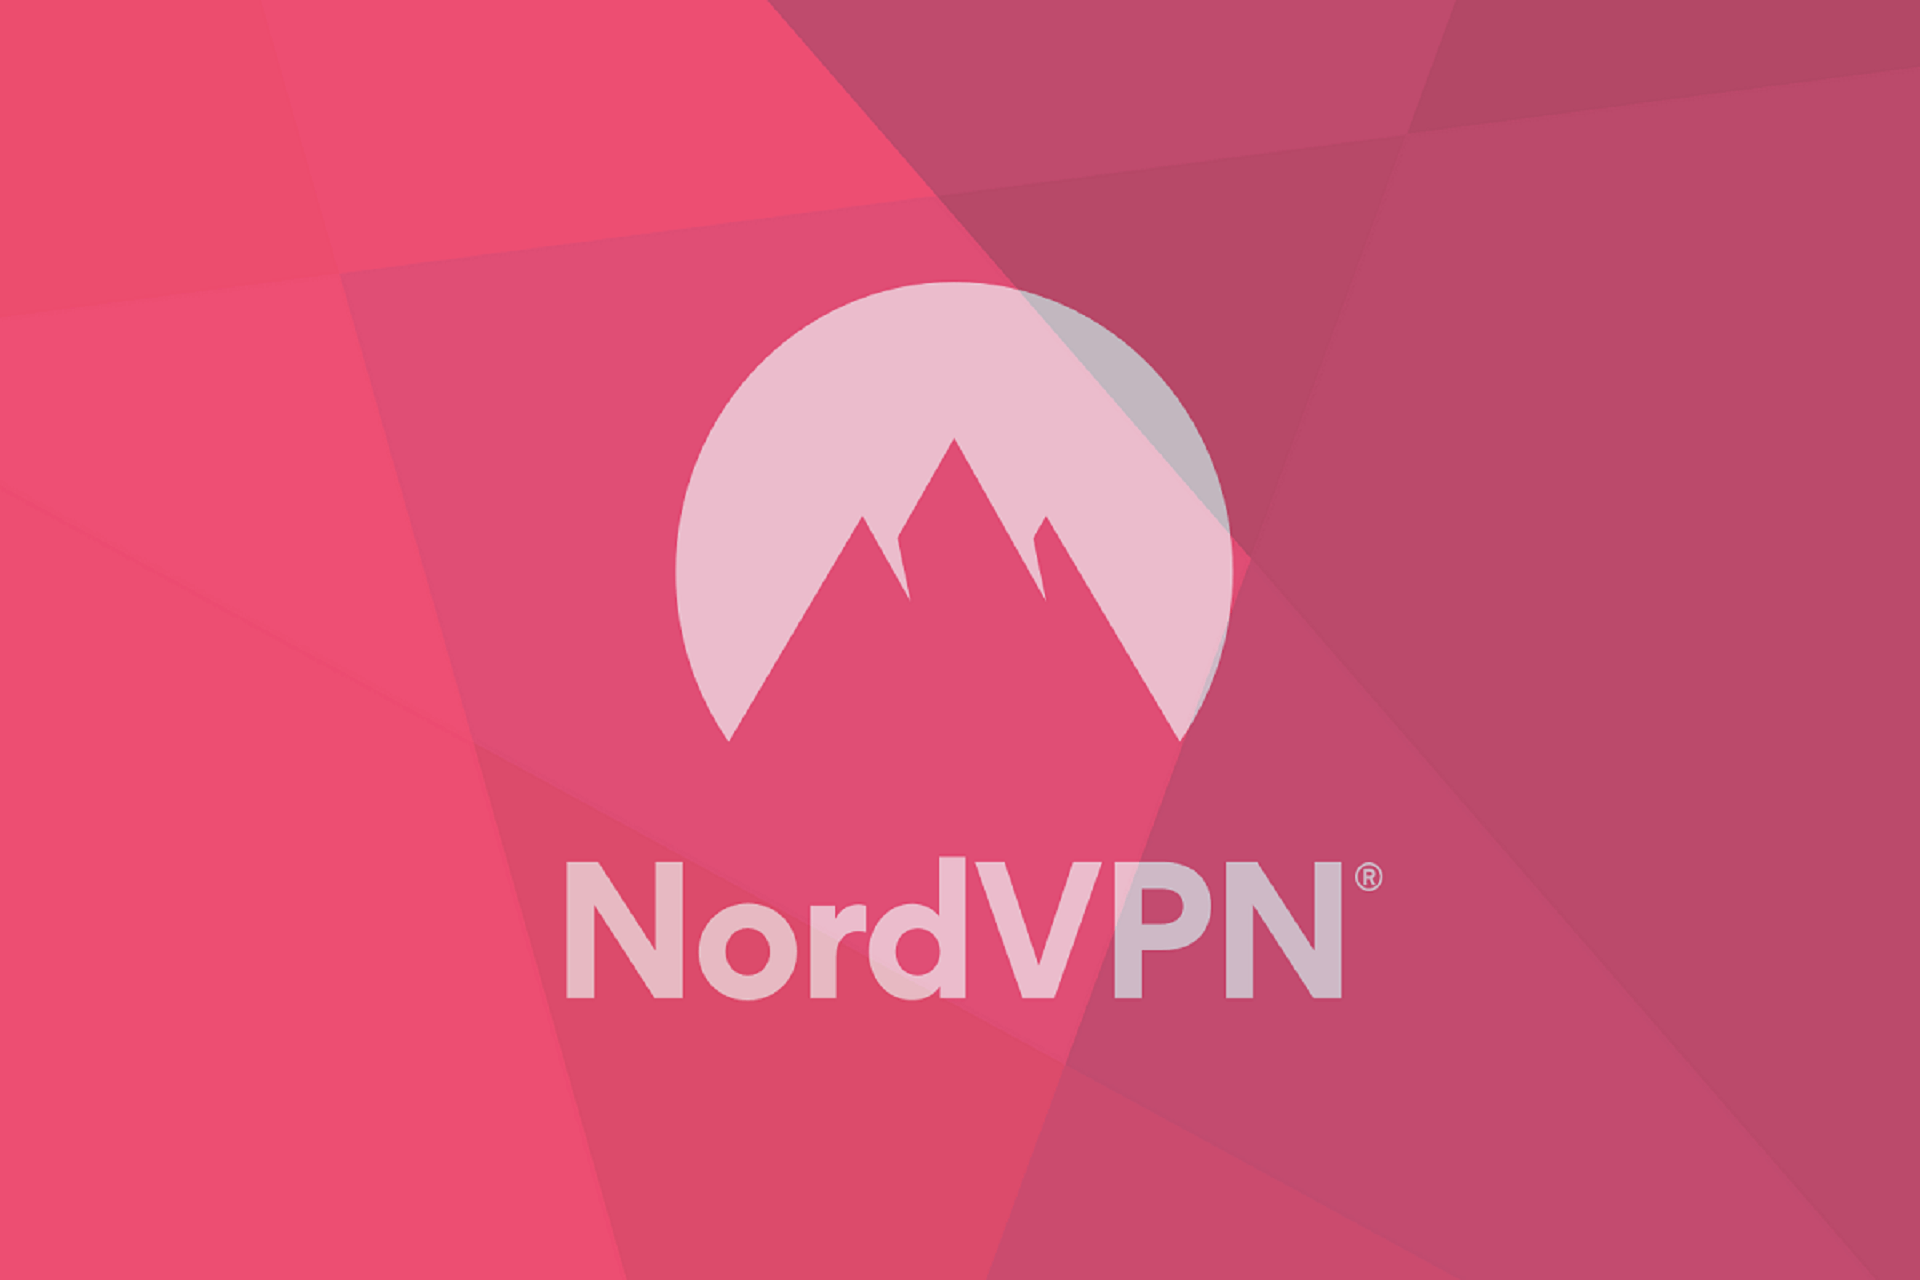 NordVPN failed to connect